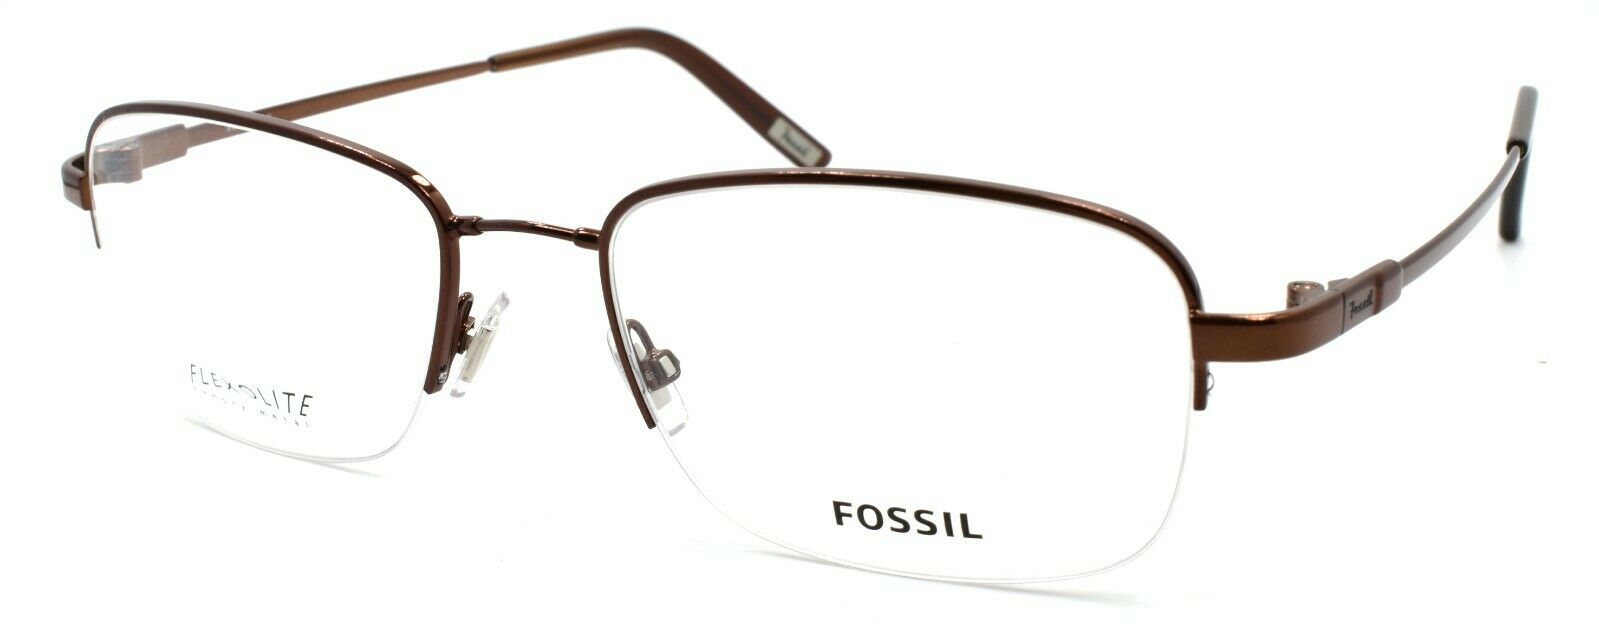 1-Fossil Trey 0TR2 Men's Eyeglasses Frames Half-rim Flexible 54-19-145 Dark Brown-780073973332-IKSpecs